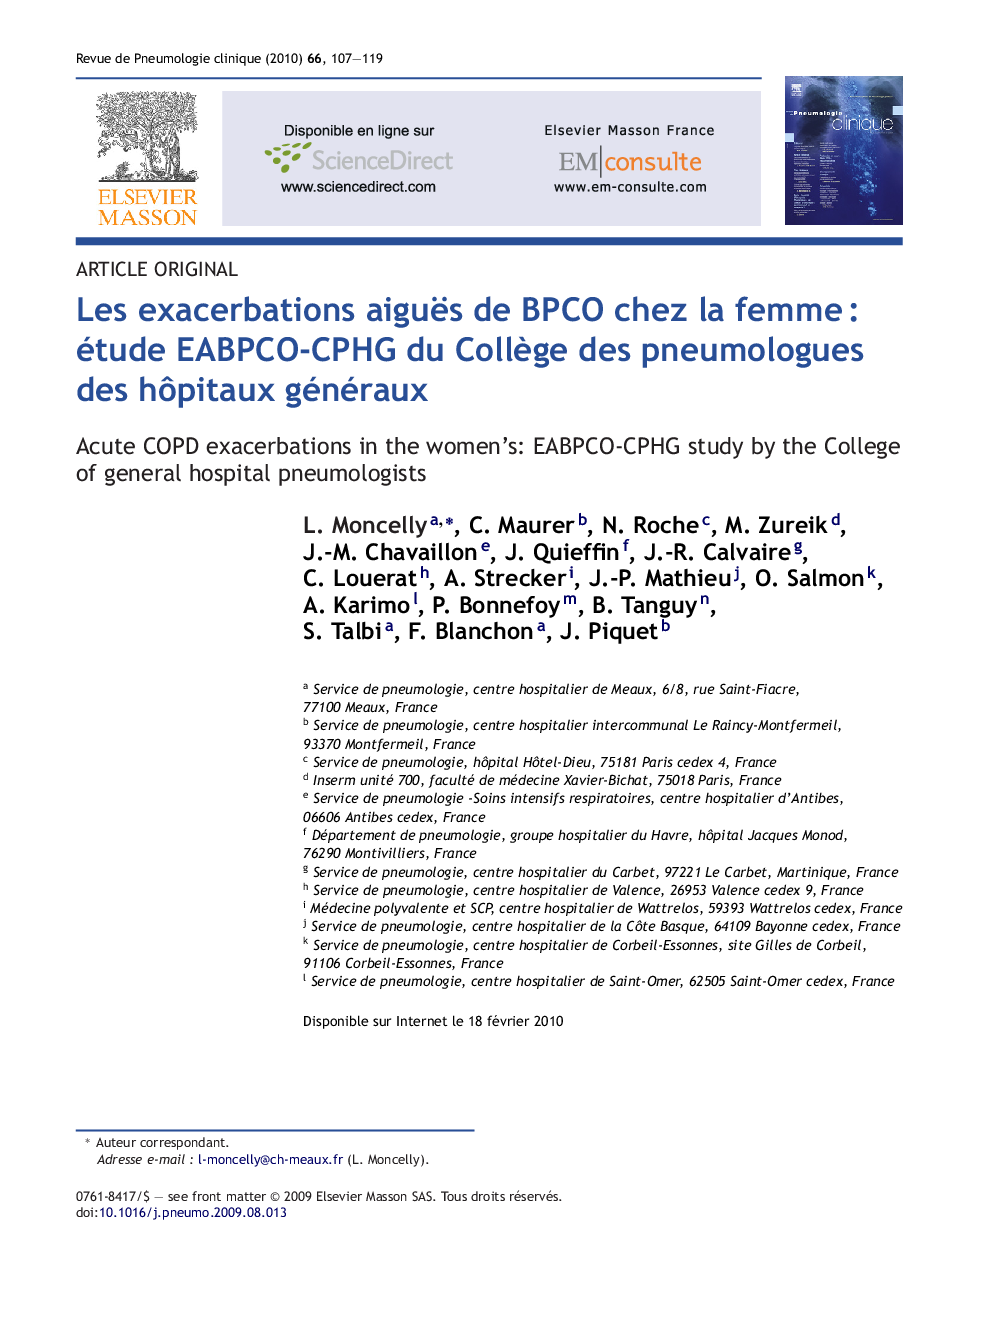 Les exacerbations aiguës de BPCO chez la femmeÂ : étude EABPCO-CPHG du CollÃ¨ge des pneumologues des hÃ´pitaux généraux